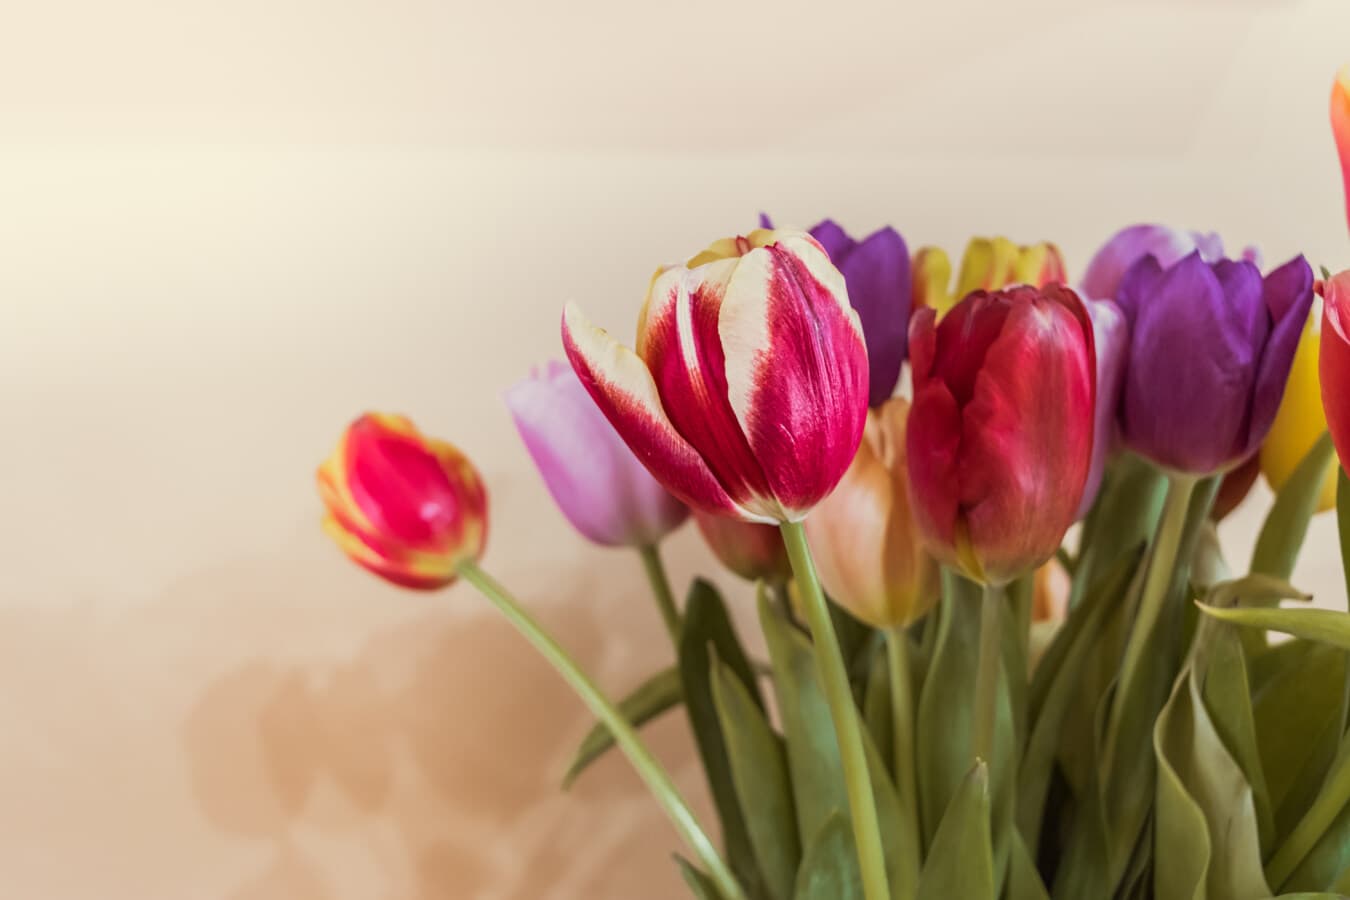 Tulip, karangan bunga, segar, pengaturan, kuncup bunga, bunga, warna-warni, mekar, bunga, bunga tulp